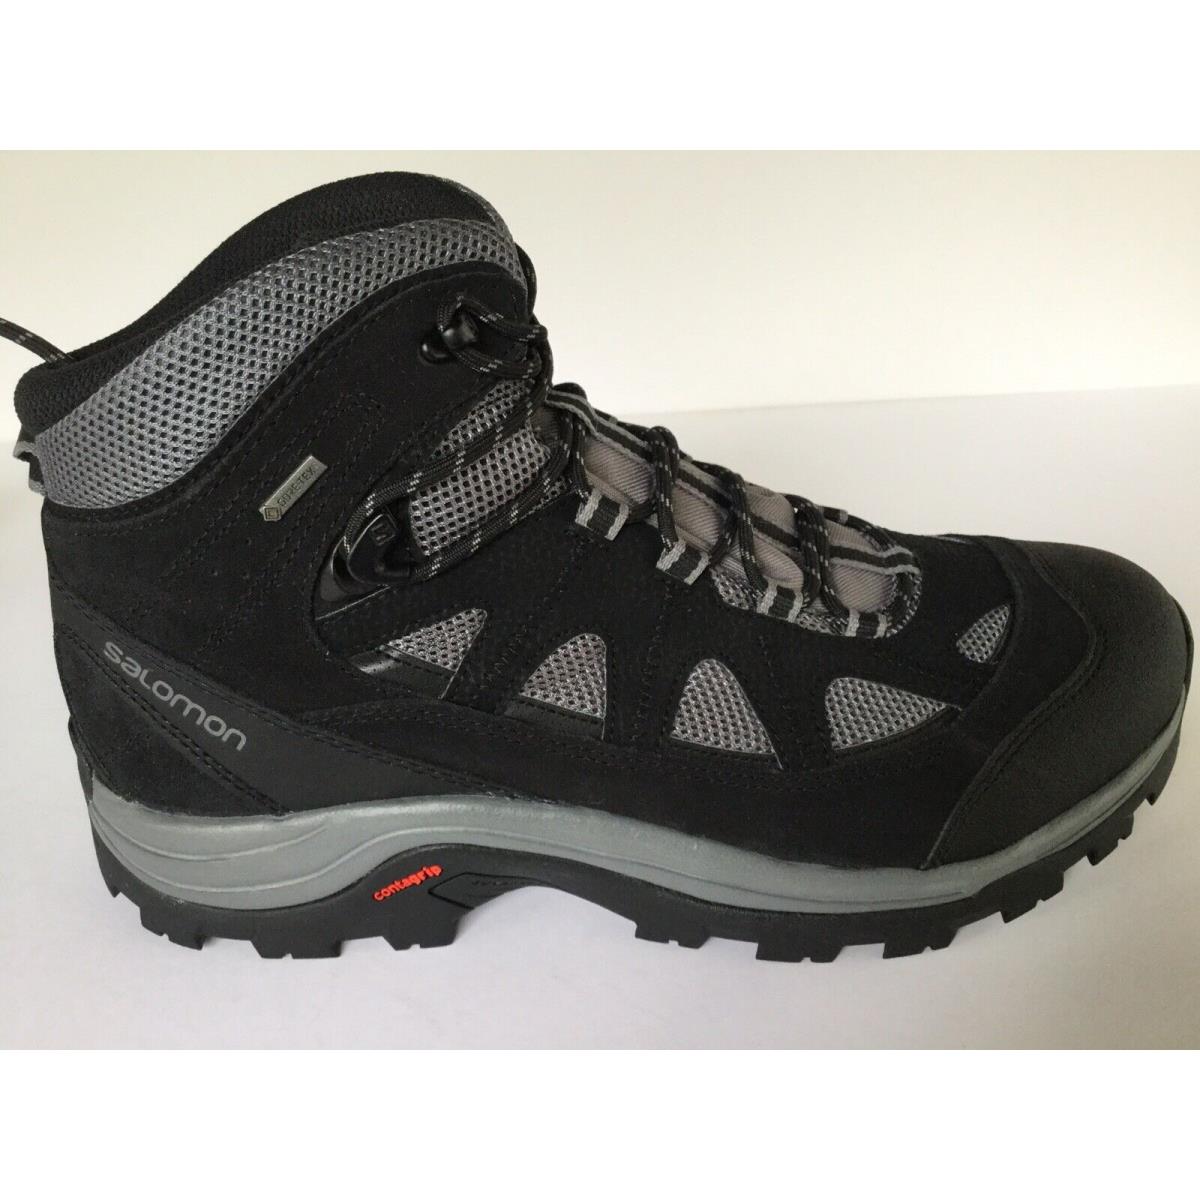 Salomon Authentic Ltr Gtx Ltr Gtx 404643 Black Grey Hiking Shoes Boots Men`s